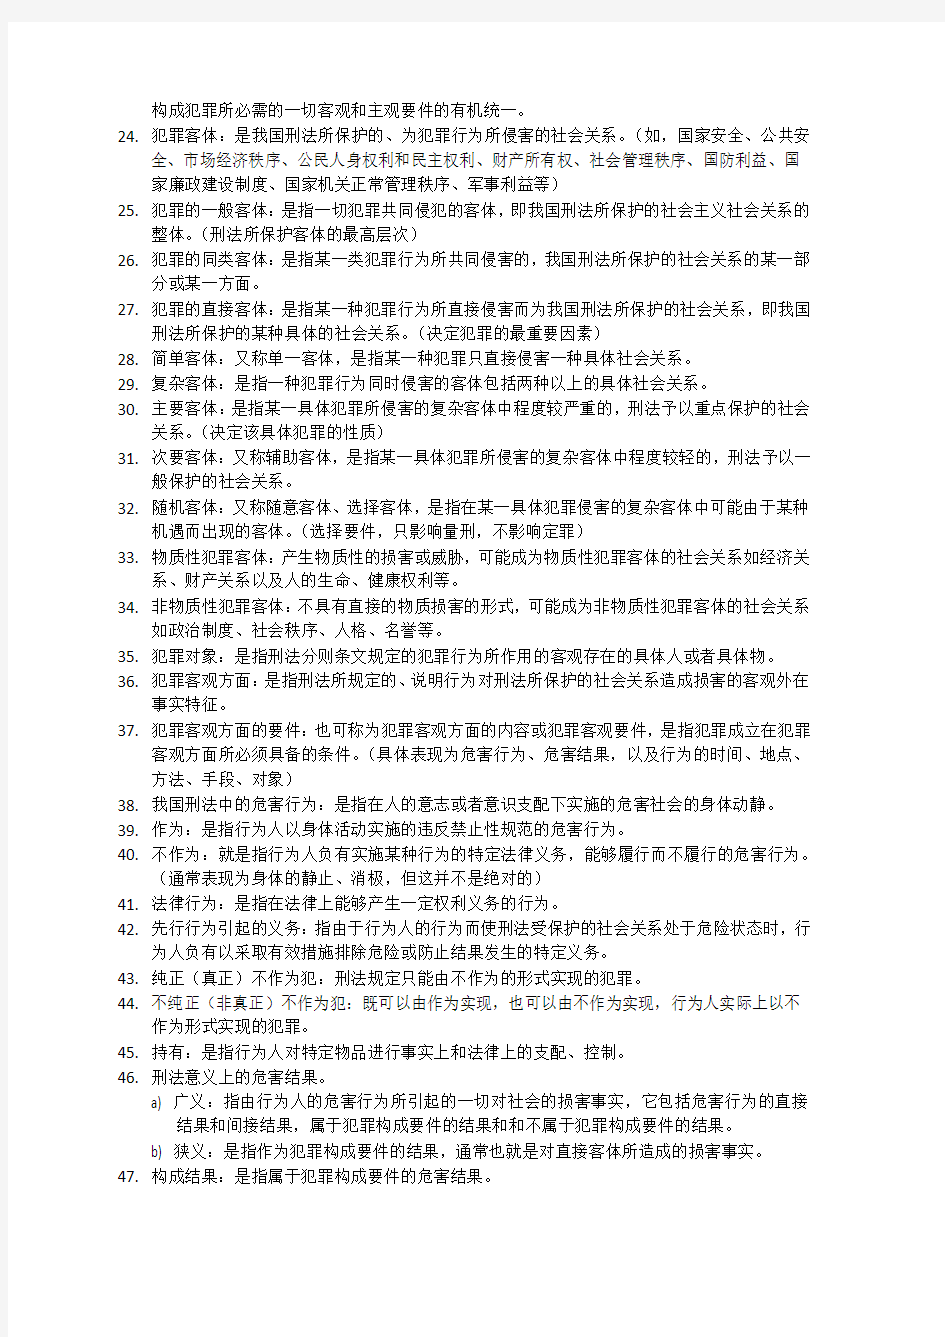 《中华人民共和国刑法》——部分名词解释